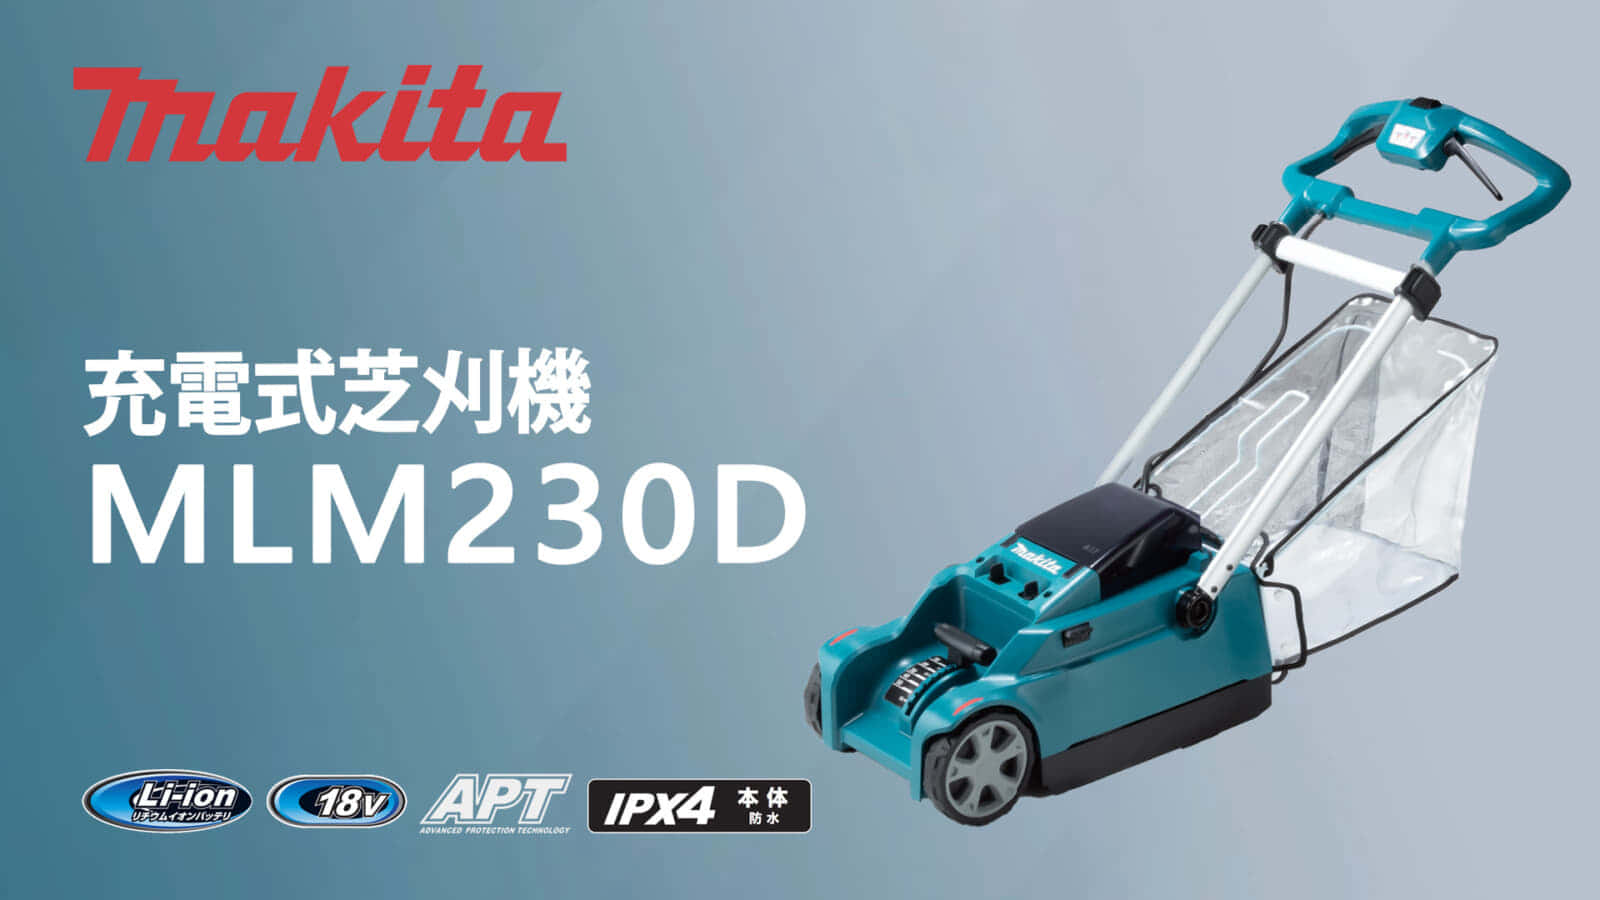 マキタ MLM230D 充電式芝刈機を発売、18Vバッテリー単体で動作する 